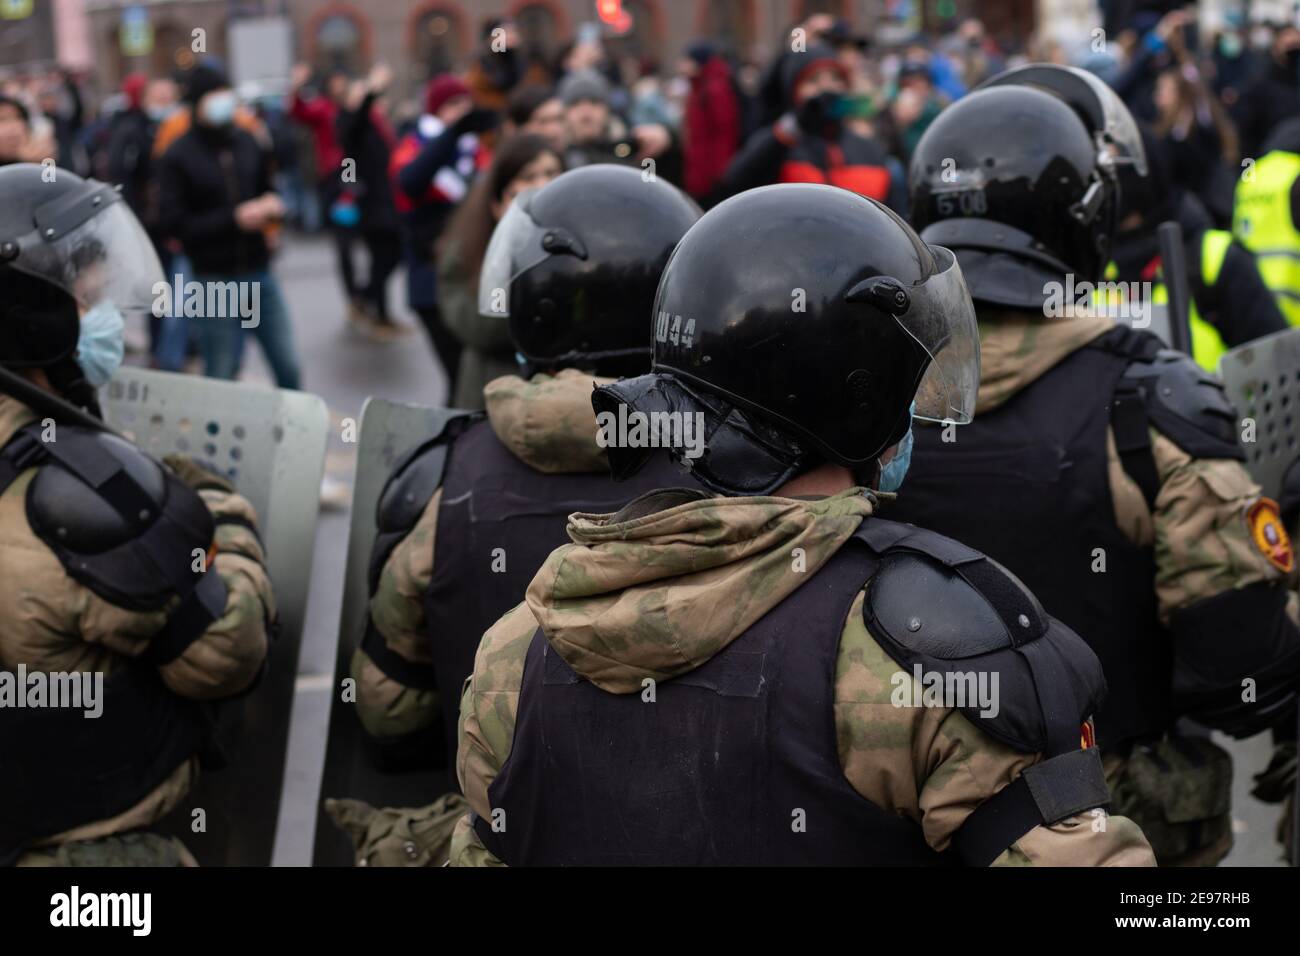 Saint-Pétersbourg, Russie - 31 janvier 2021 : force de police et manifestation pacifique, éditorial Banque D'Images